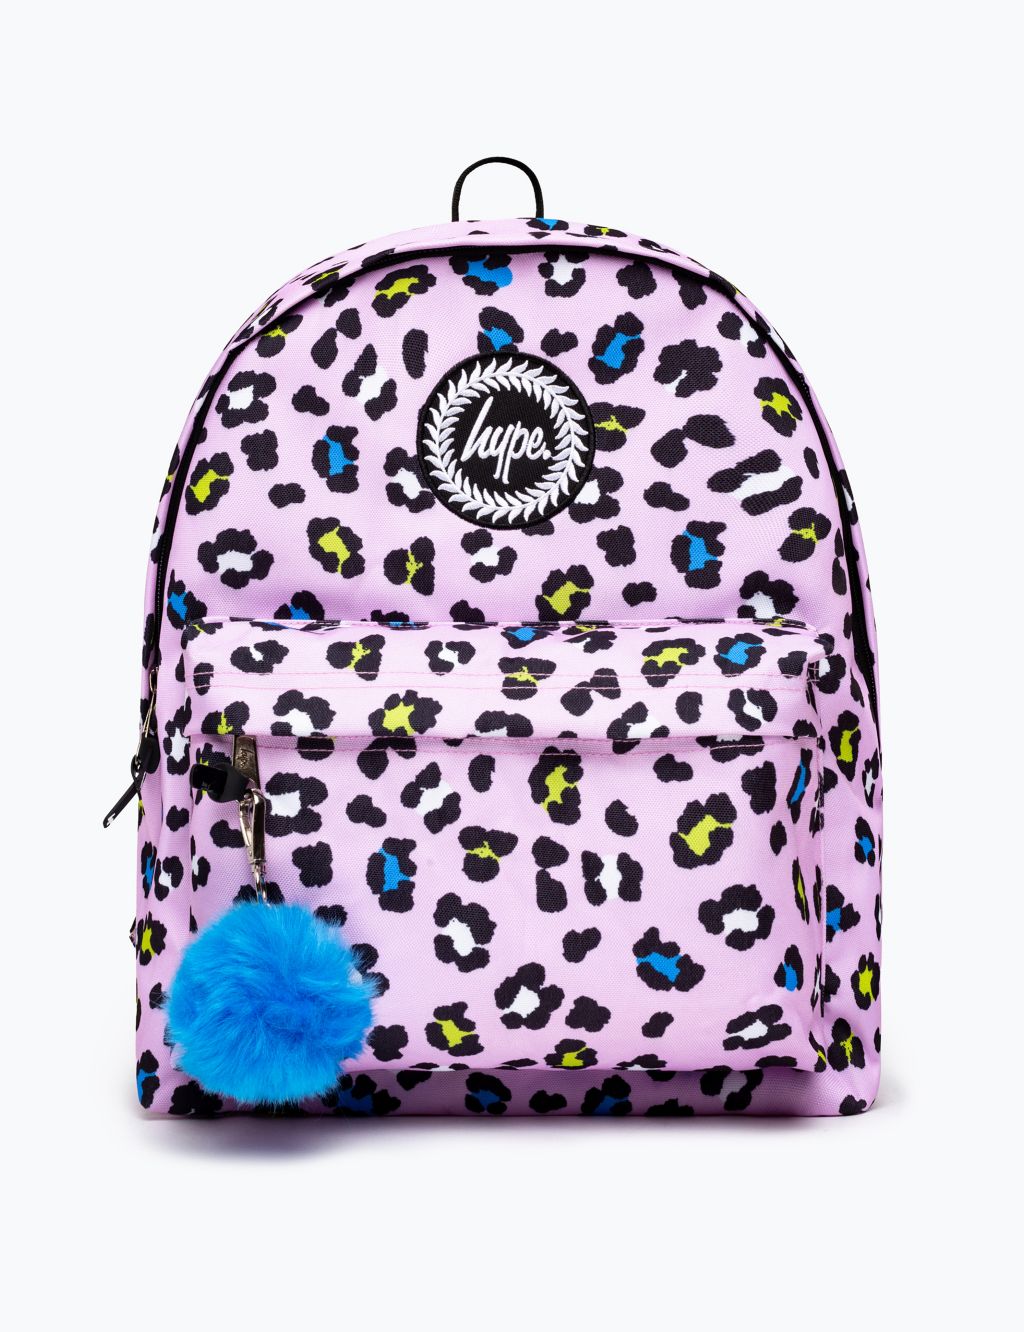 Kids' Leopard Print Backpack image 1